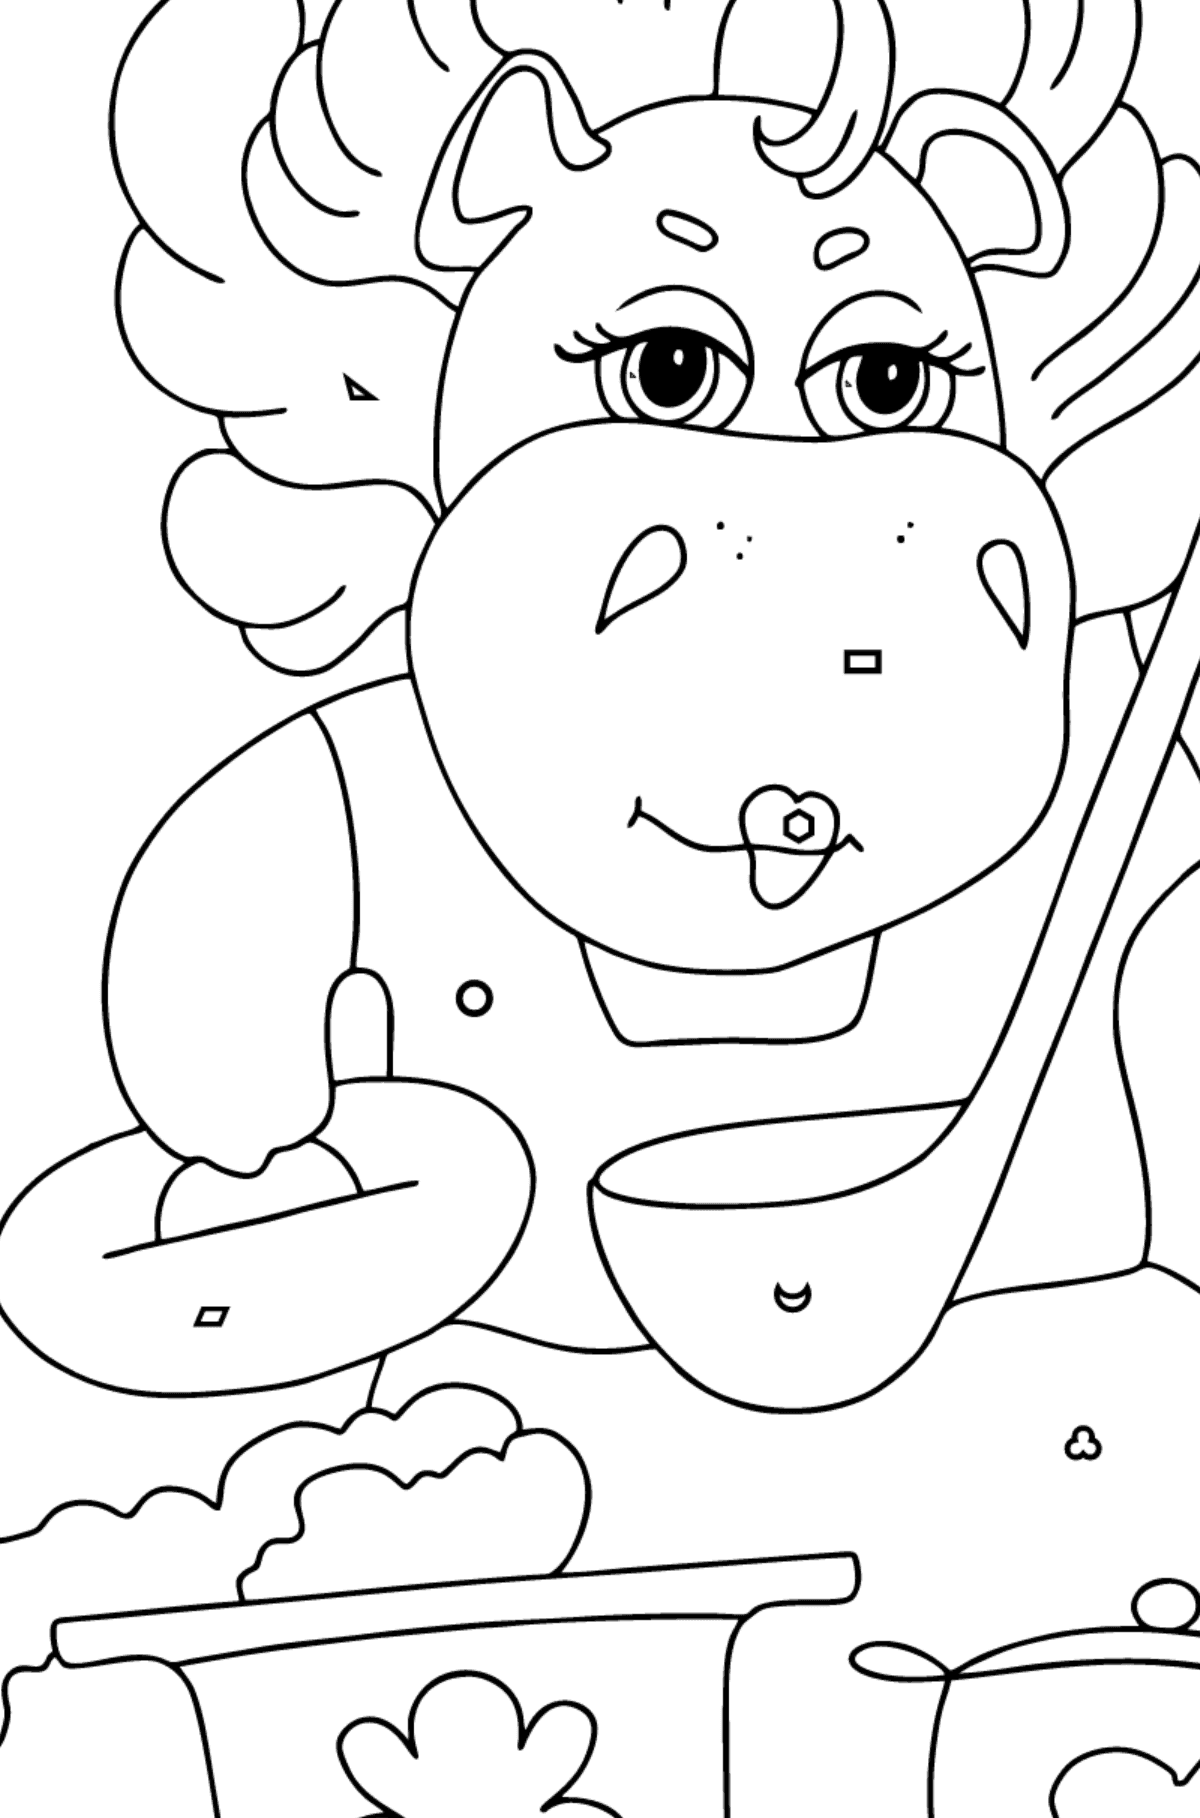 Målarbild magisk flodhäst (lätt) - Färgläggning av geometriska former För barn